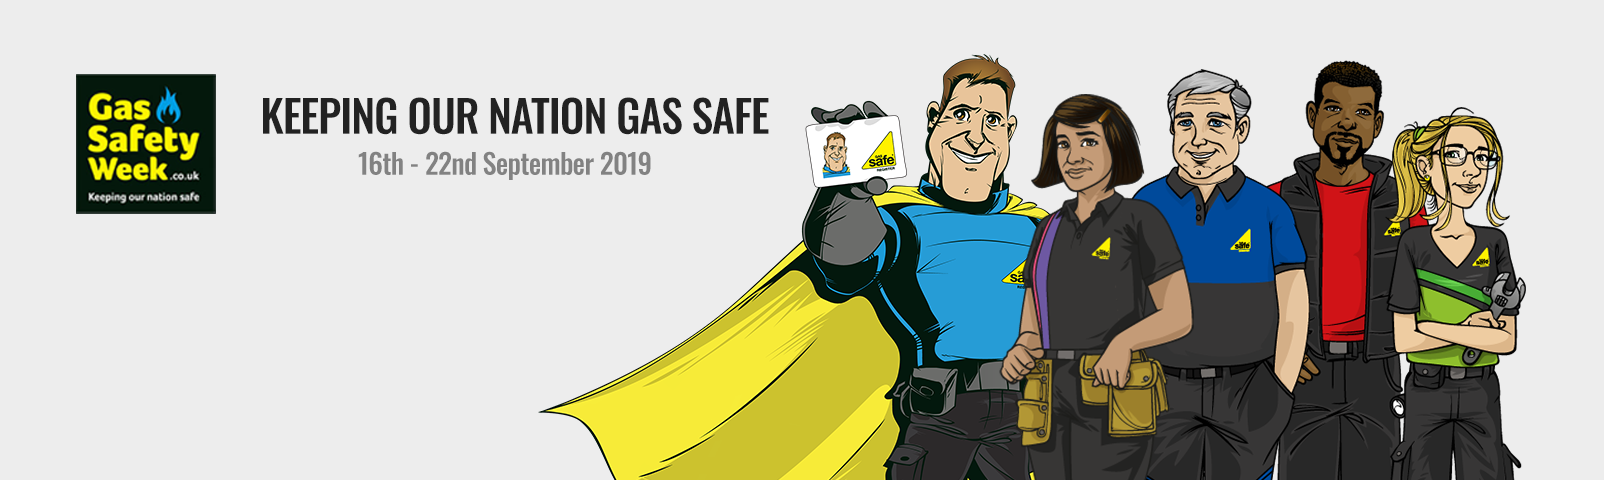 Gas Safety Week 2019